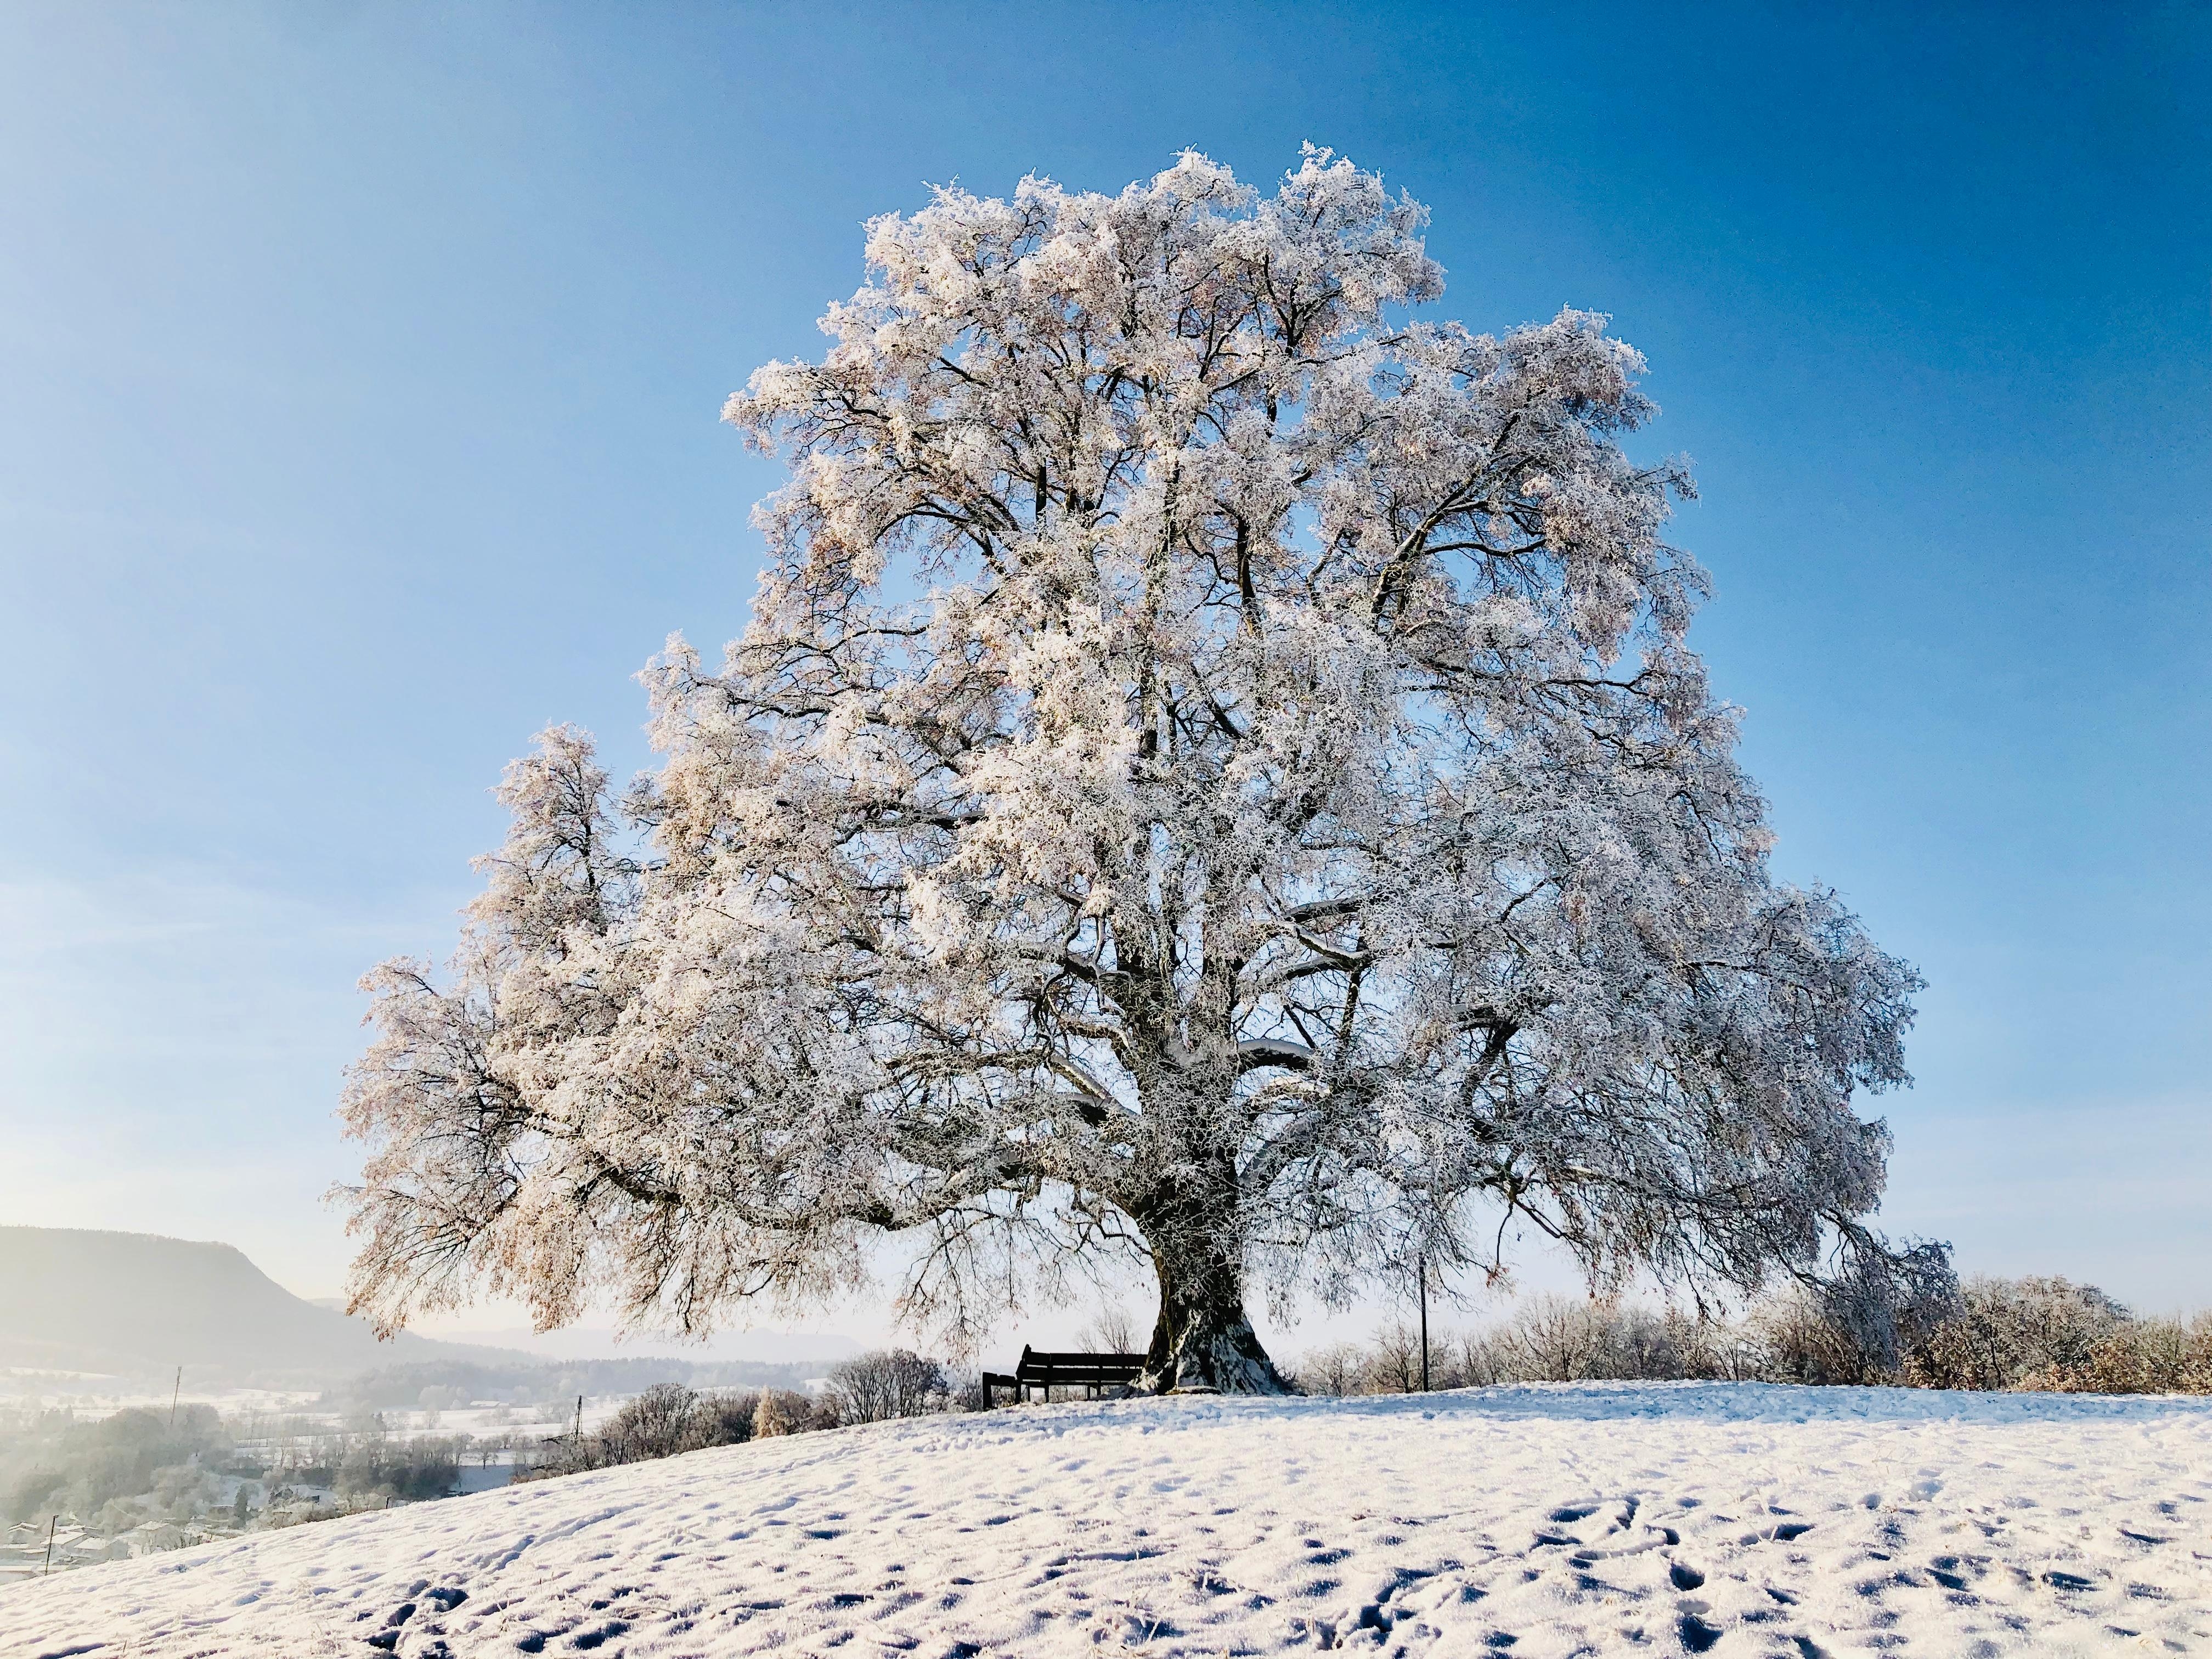 Winterwonderland ... Friedenslinde im Schnee #winterwonderland #frost #winterzauber